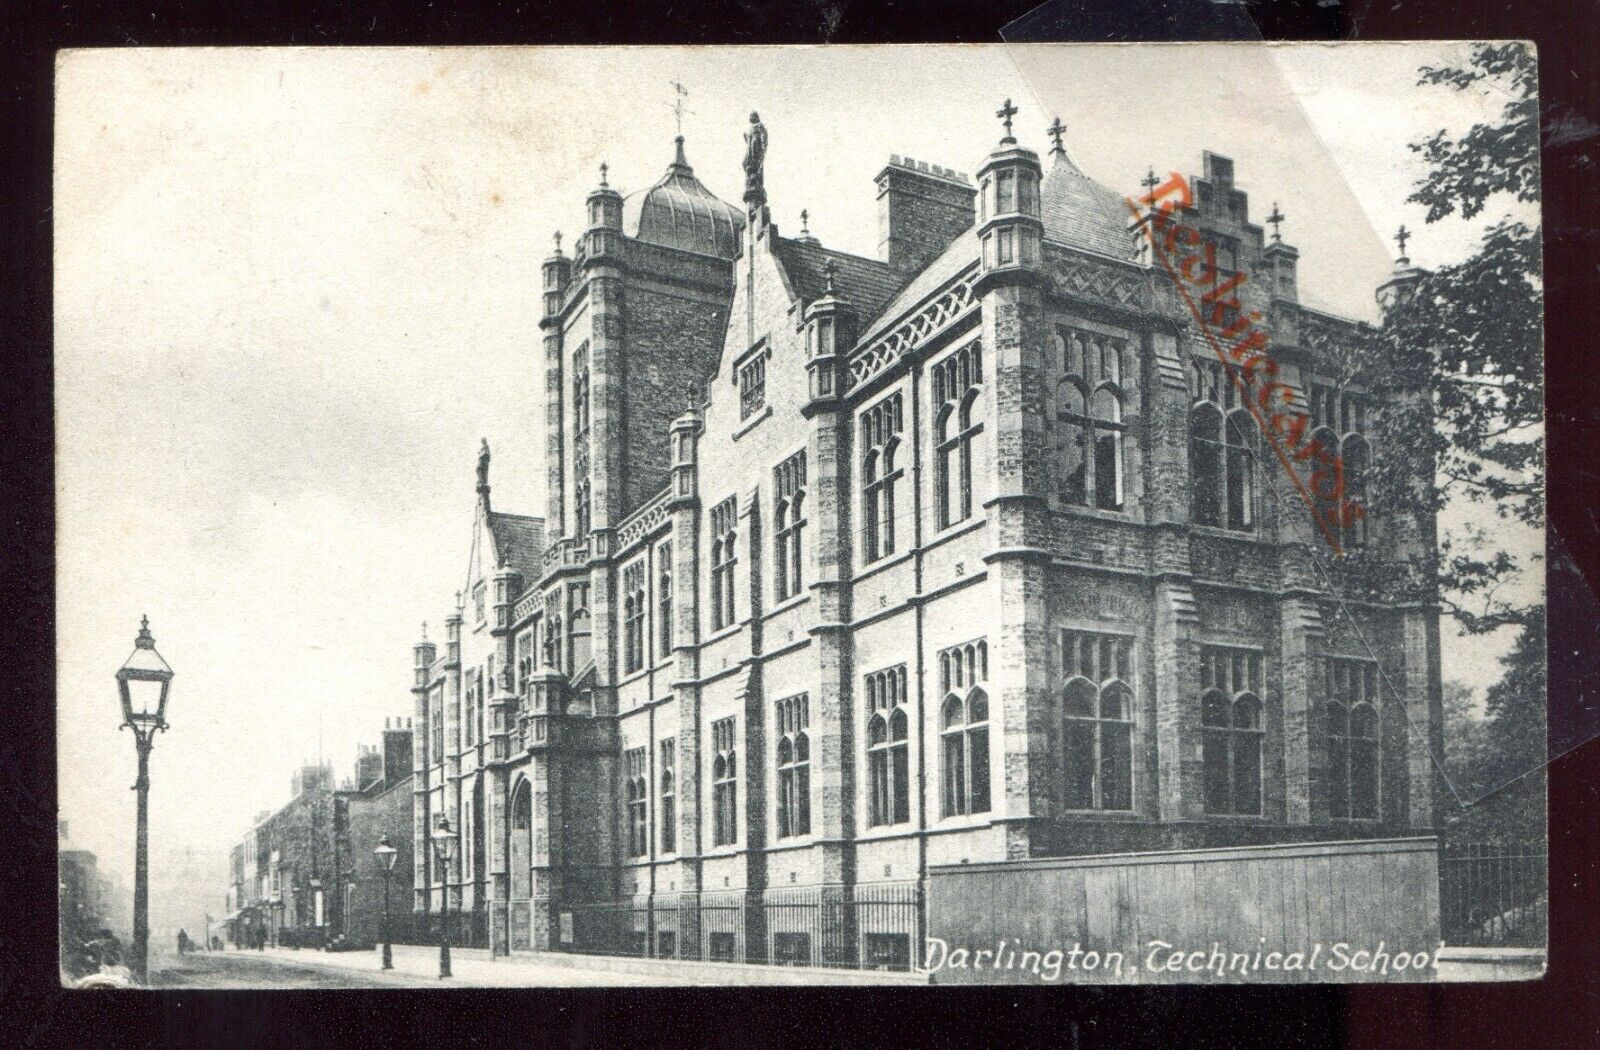 House Clearance - Darlington Technical School (WW1)